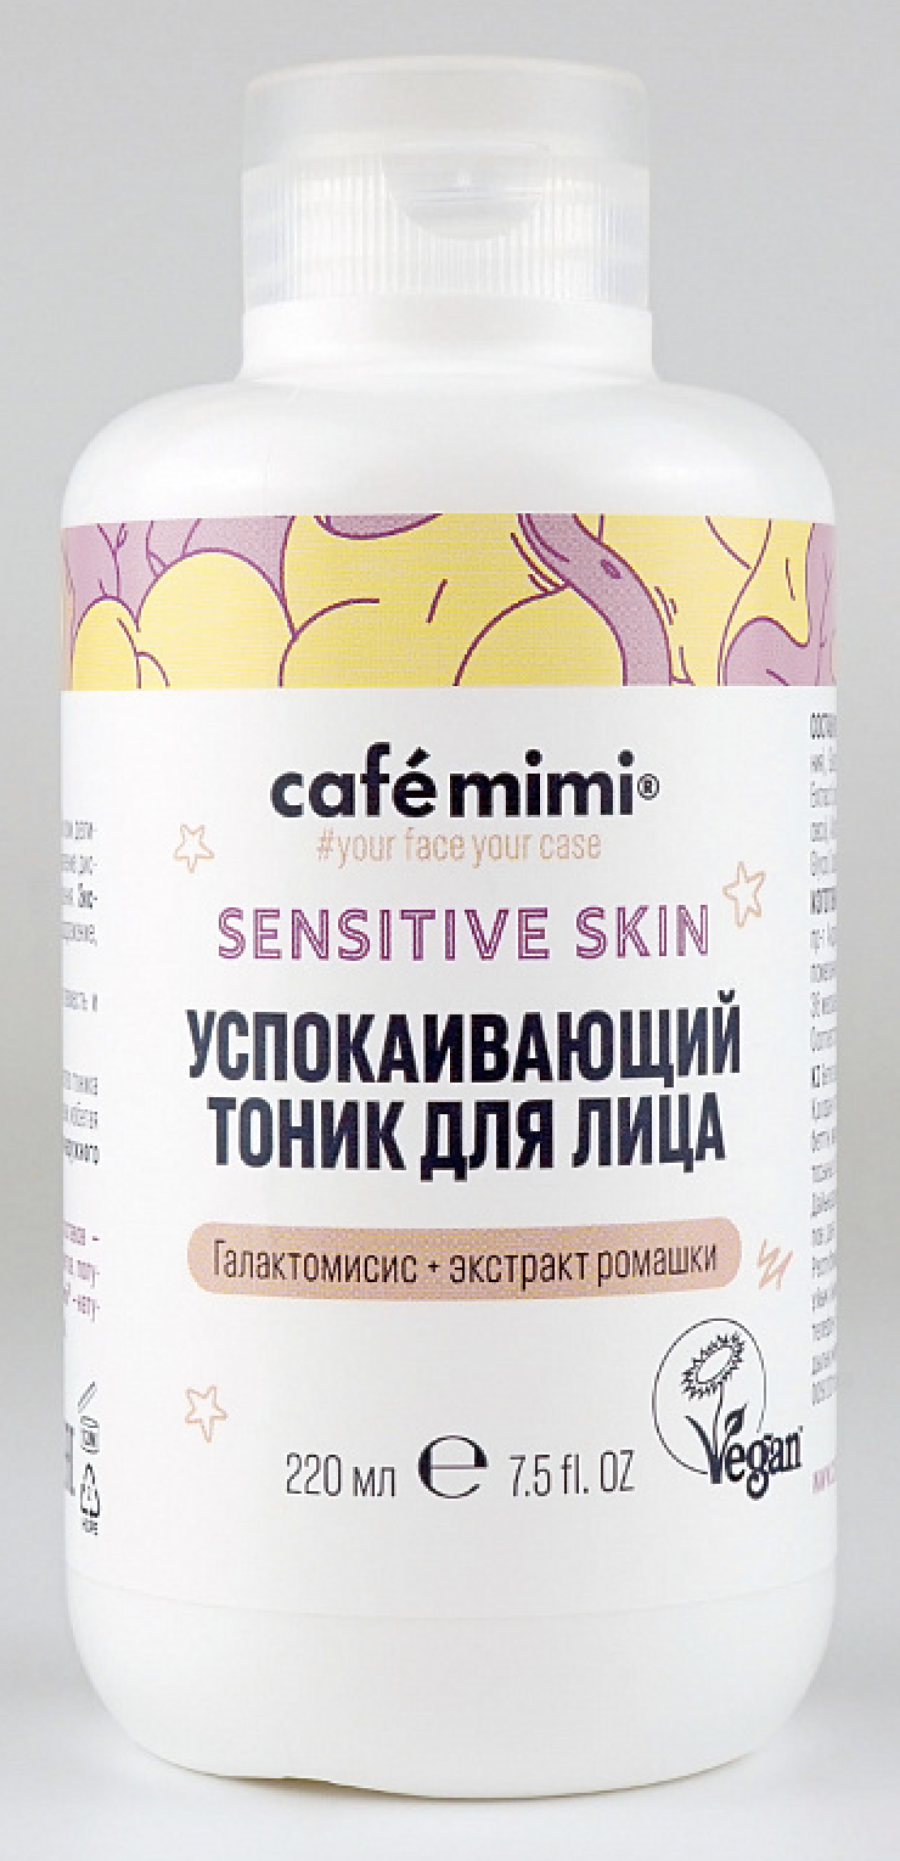 Cafemimi / Кафемими Тоник для лица Sensitive Skin, успокаивающий, с экстрактом ромашки, для всех типов кожи, 220мл / уходовая косметика